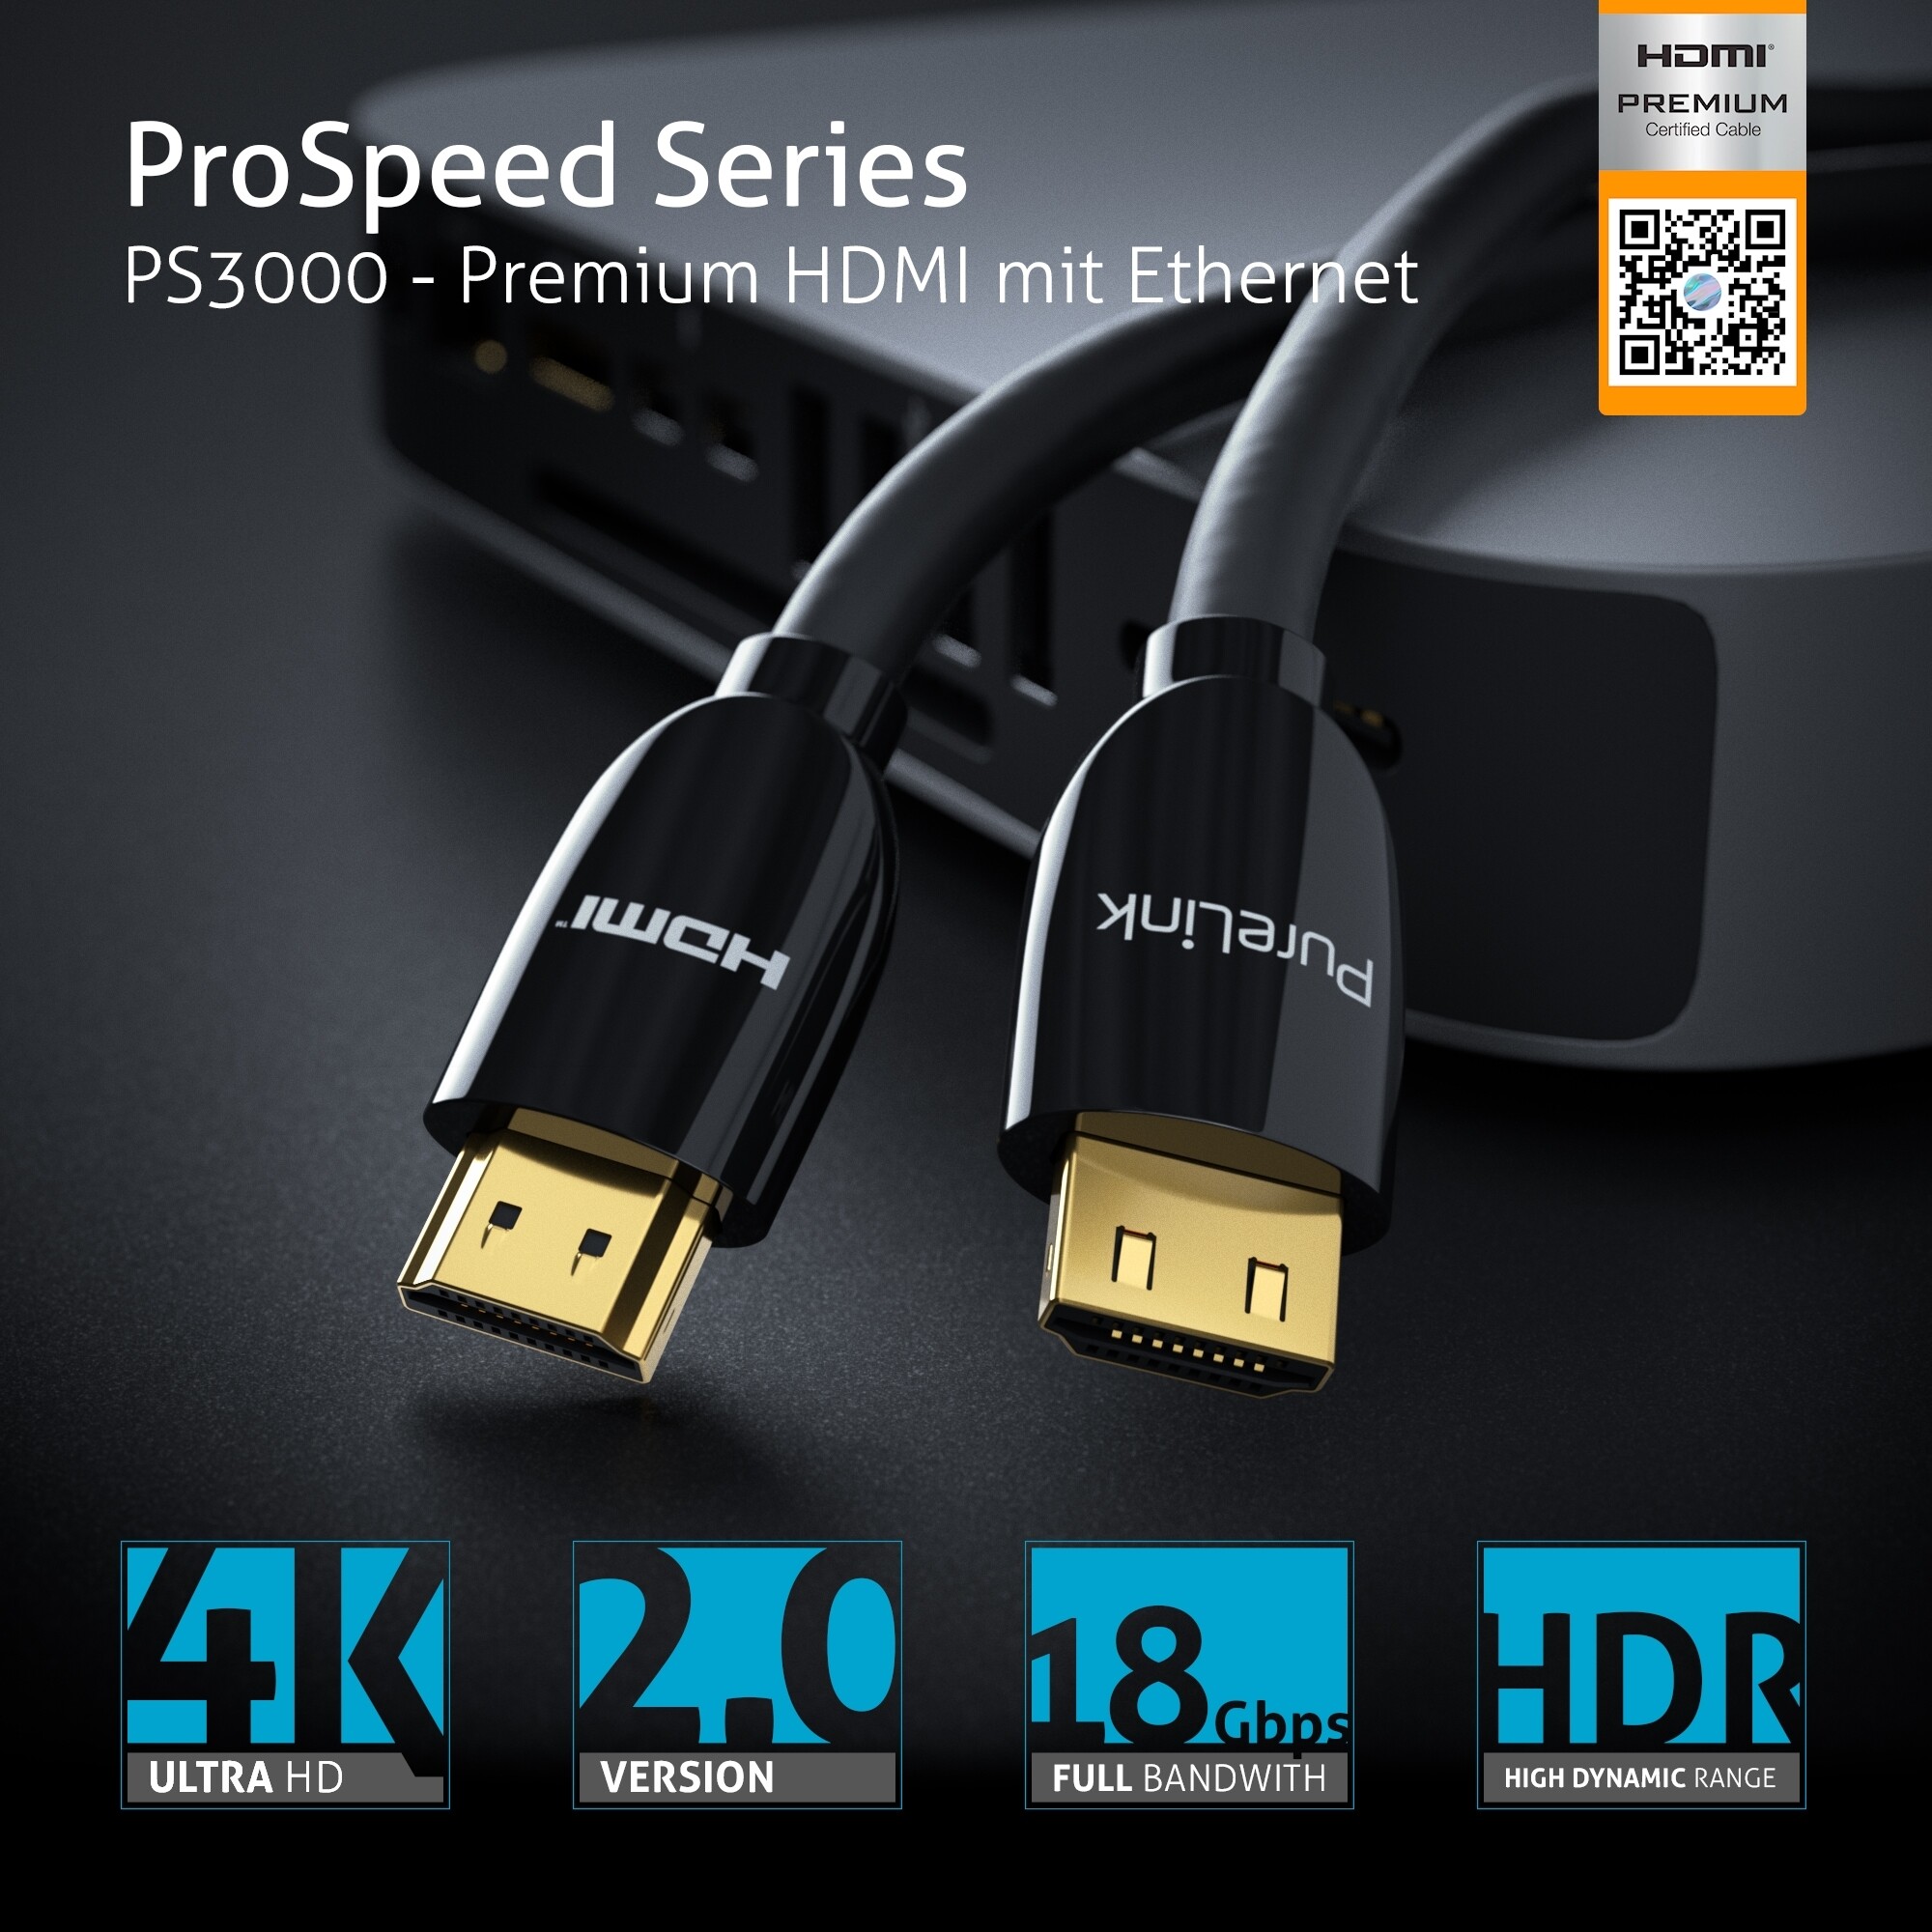 PureLink-PS3000-Premium-Highspeed-HDMI-Kabel-mit-Ethernet-Zertifiziert-2-00m